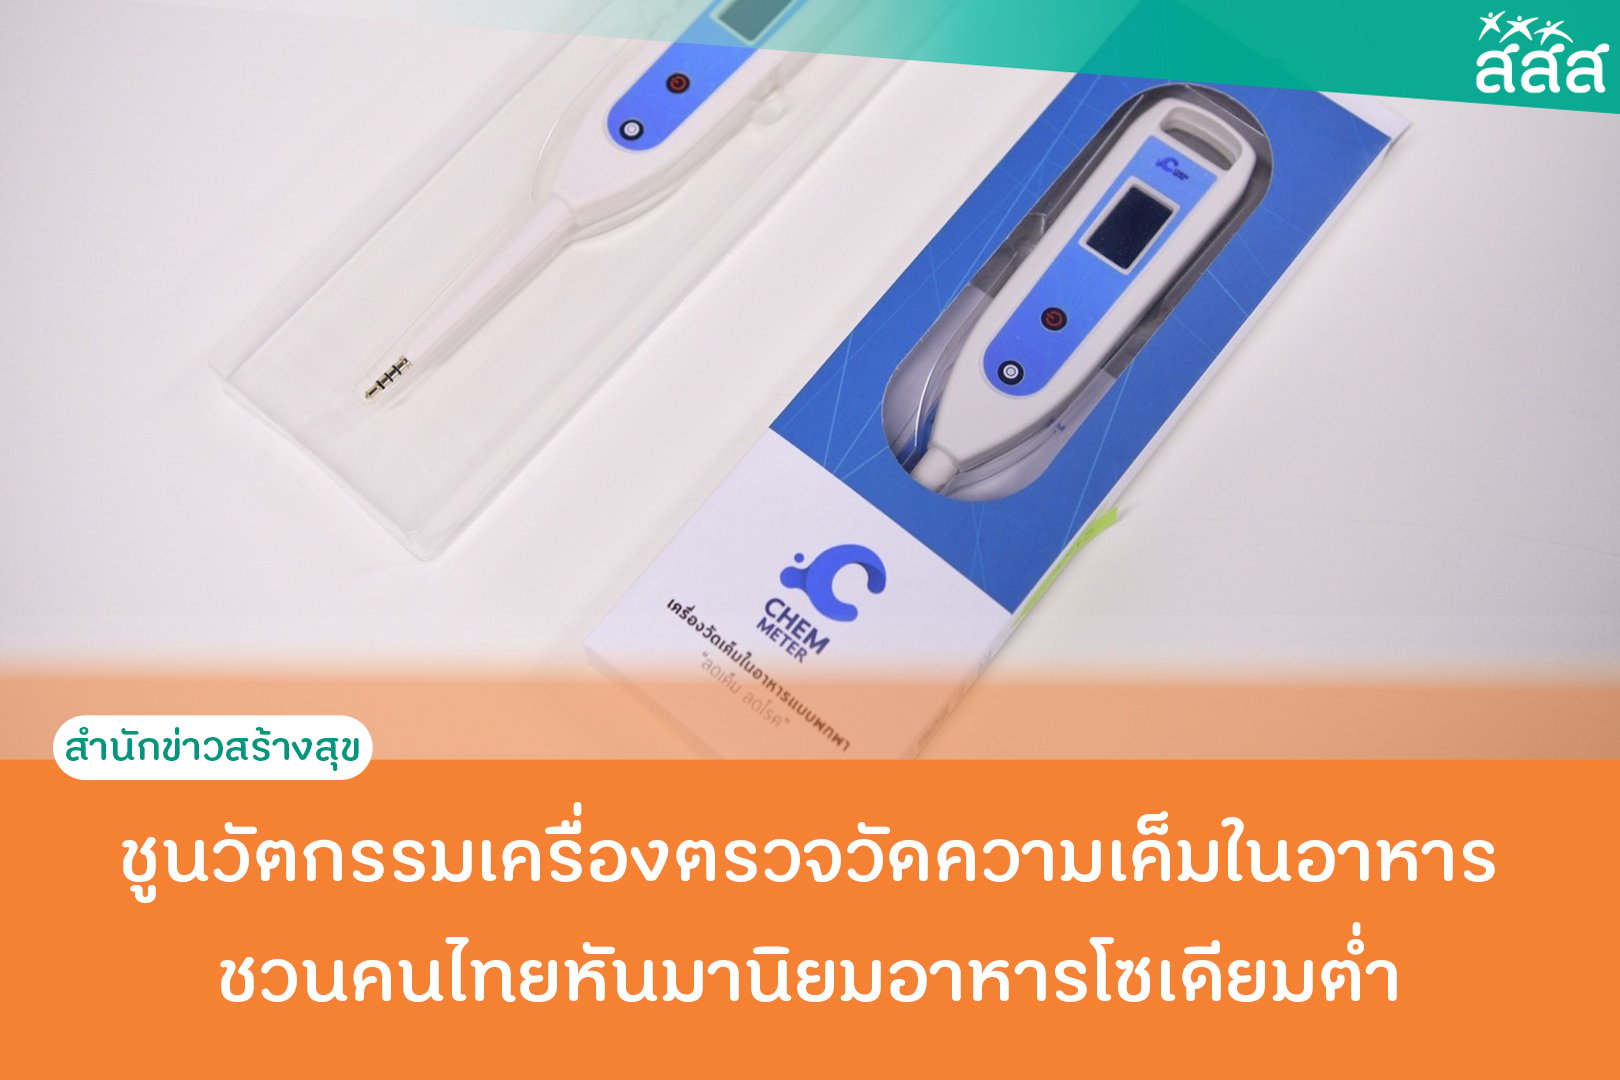 ชูนวัตกรรมเครื่องตรวจวัดความเค็มในอาหาร  ชวนคนไทยหันมานิยมอาหารโซเดียมต่ำ thaihealth